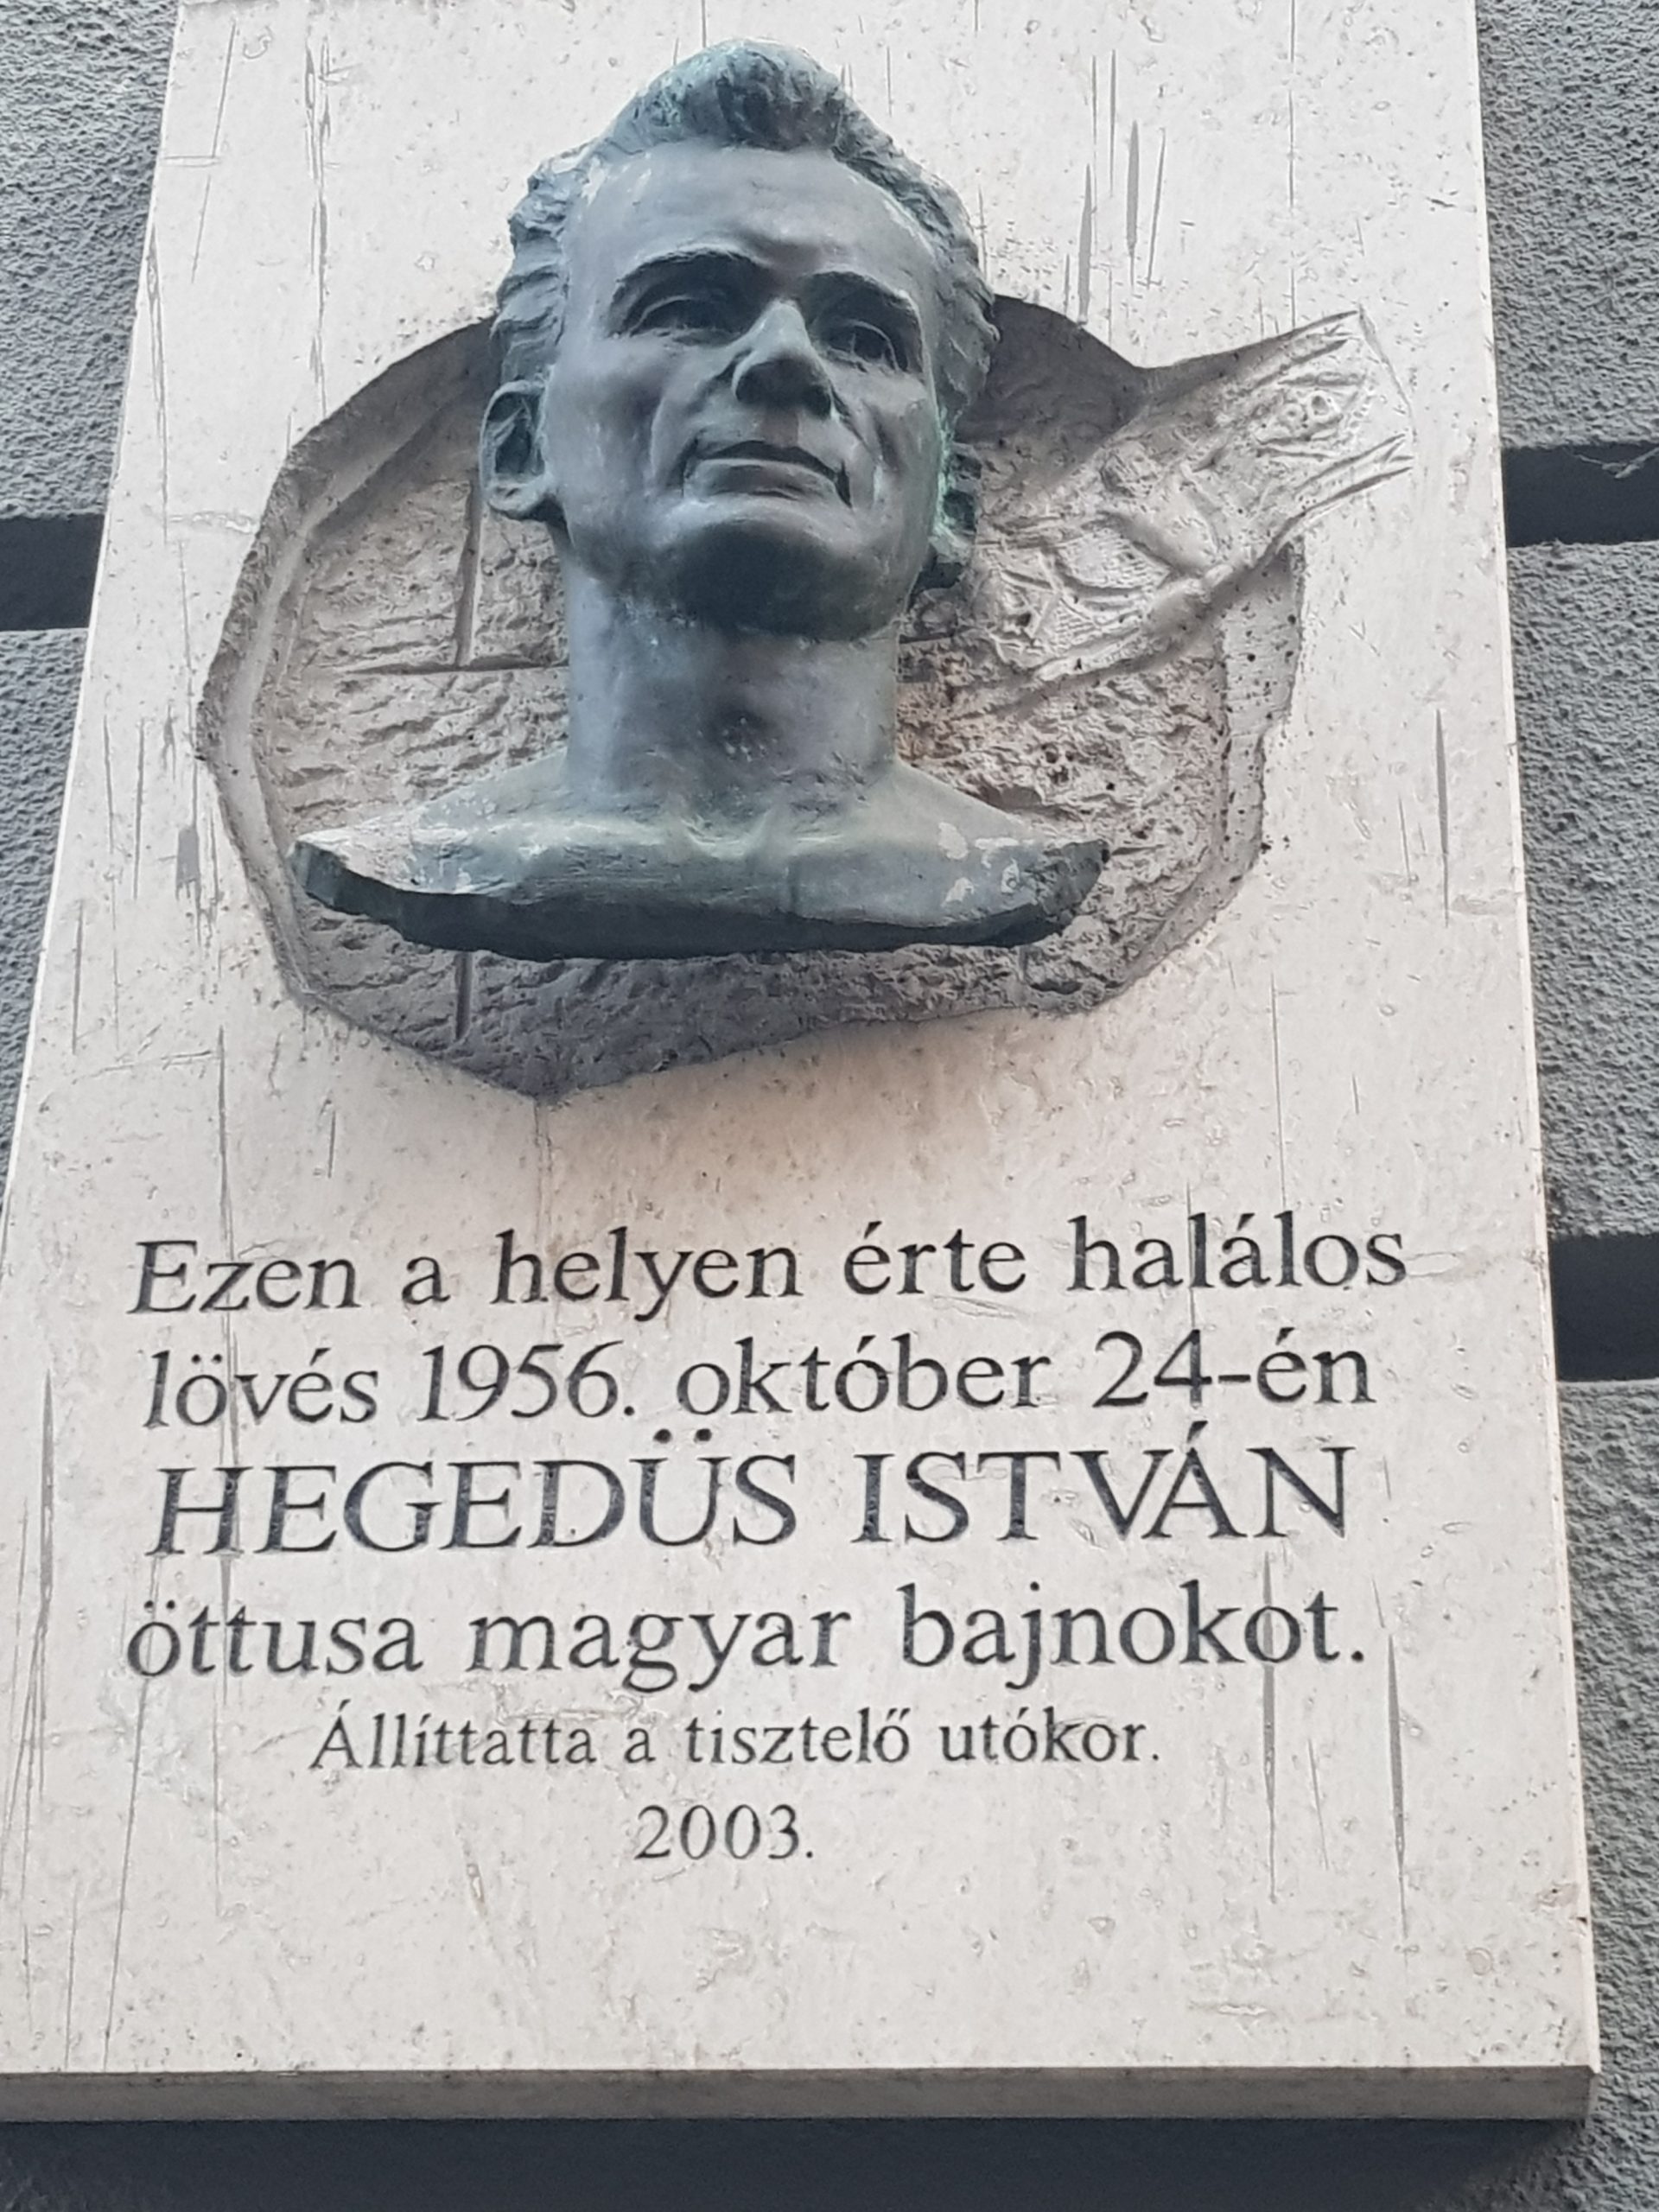 Hegedűs István öttusázó magyar bajnok